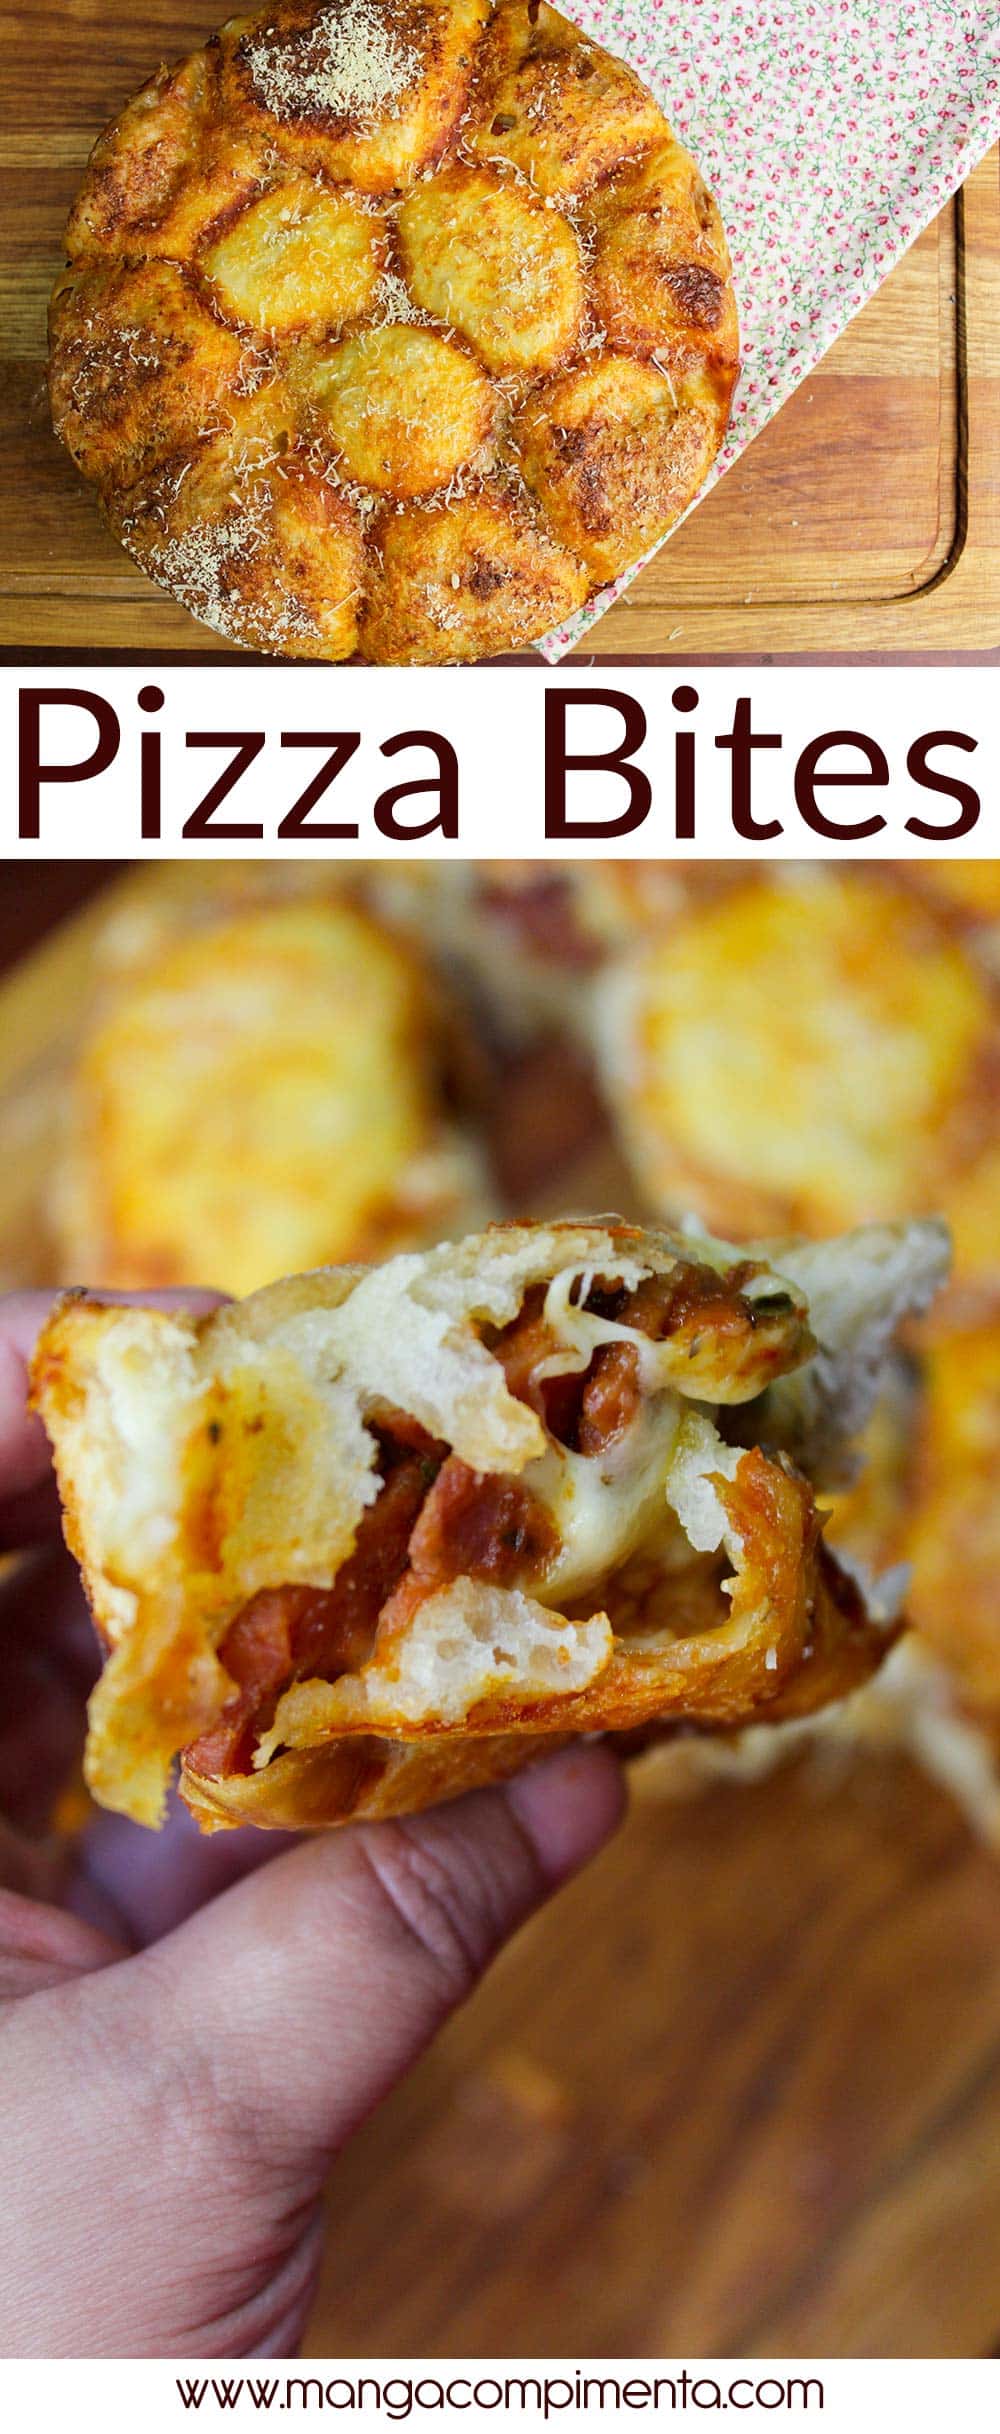 Pizza Bites - Receita Americana para o chá da tarde delicioso!